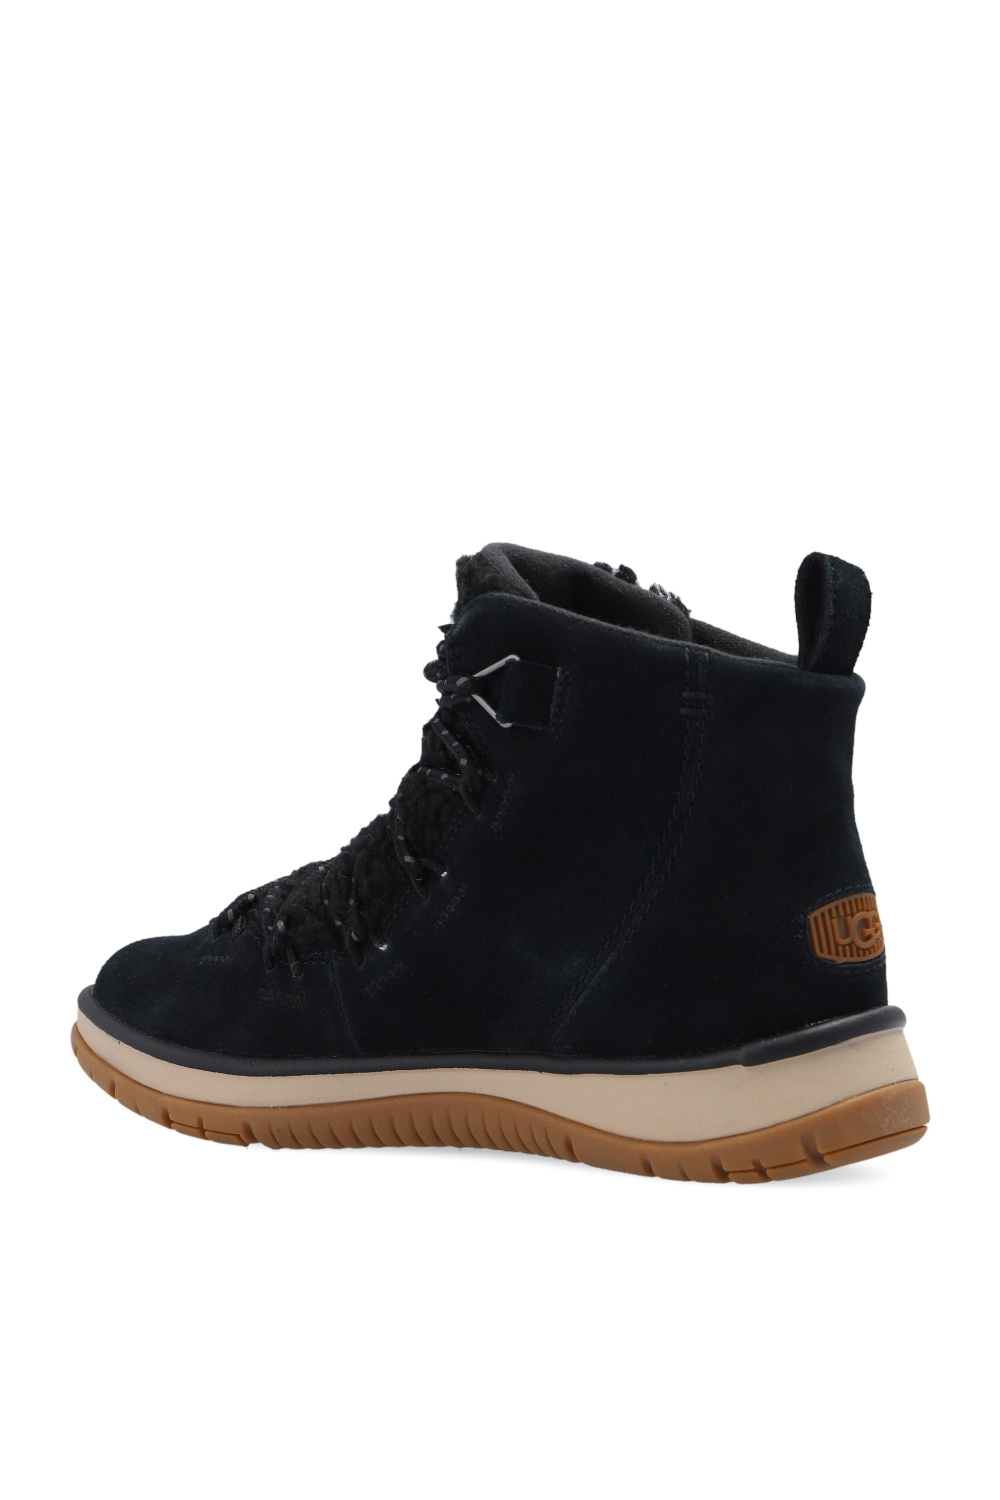 UGG ‘Lakesider’ boots